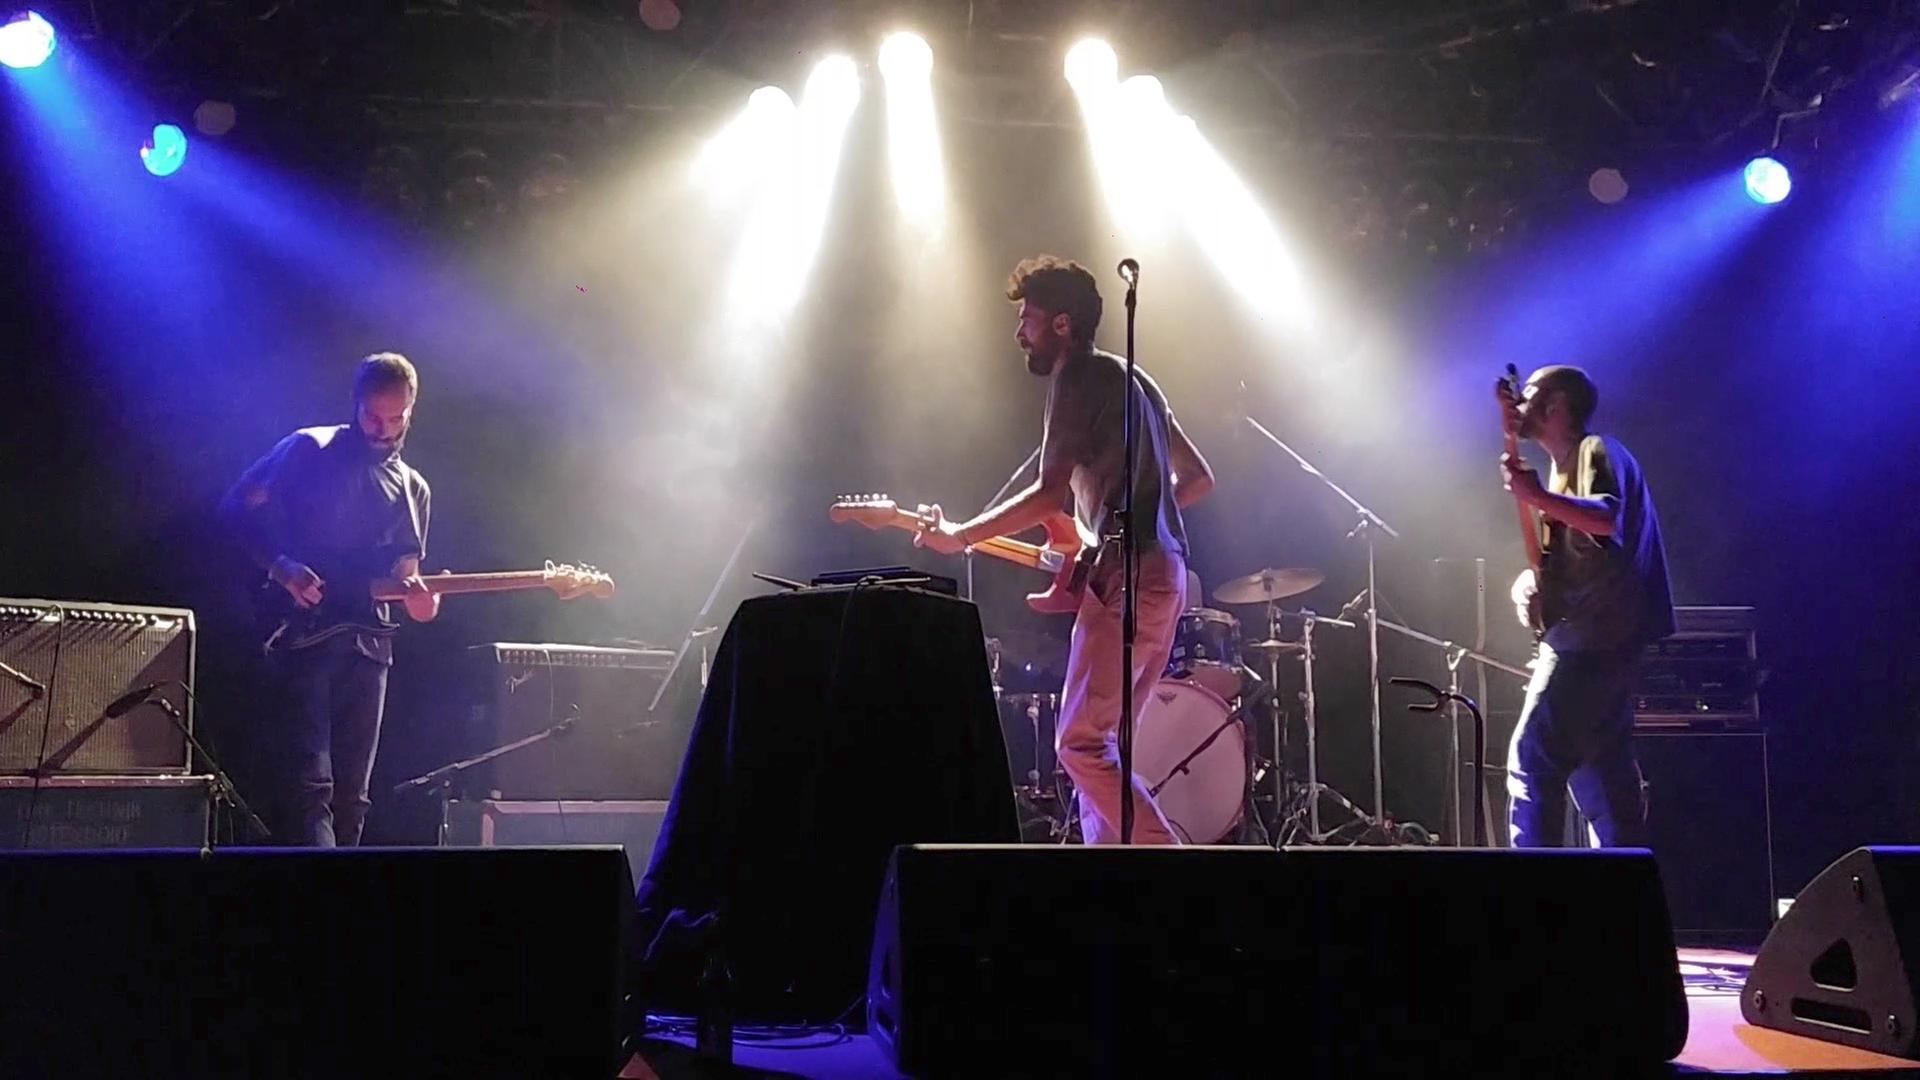 Die syrische Rockband Khebez Dawle , deren Mitglieder sich nach der Flucht aus Syrien in Berlin wieder zusammengefunden haben, steht bei einem Konzert auf der Bühne.